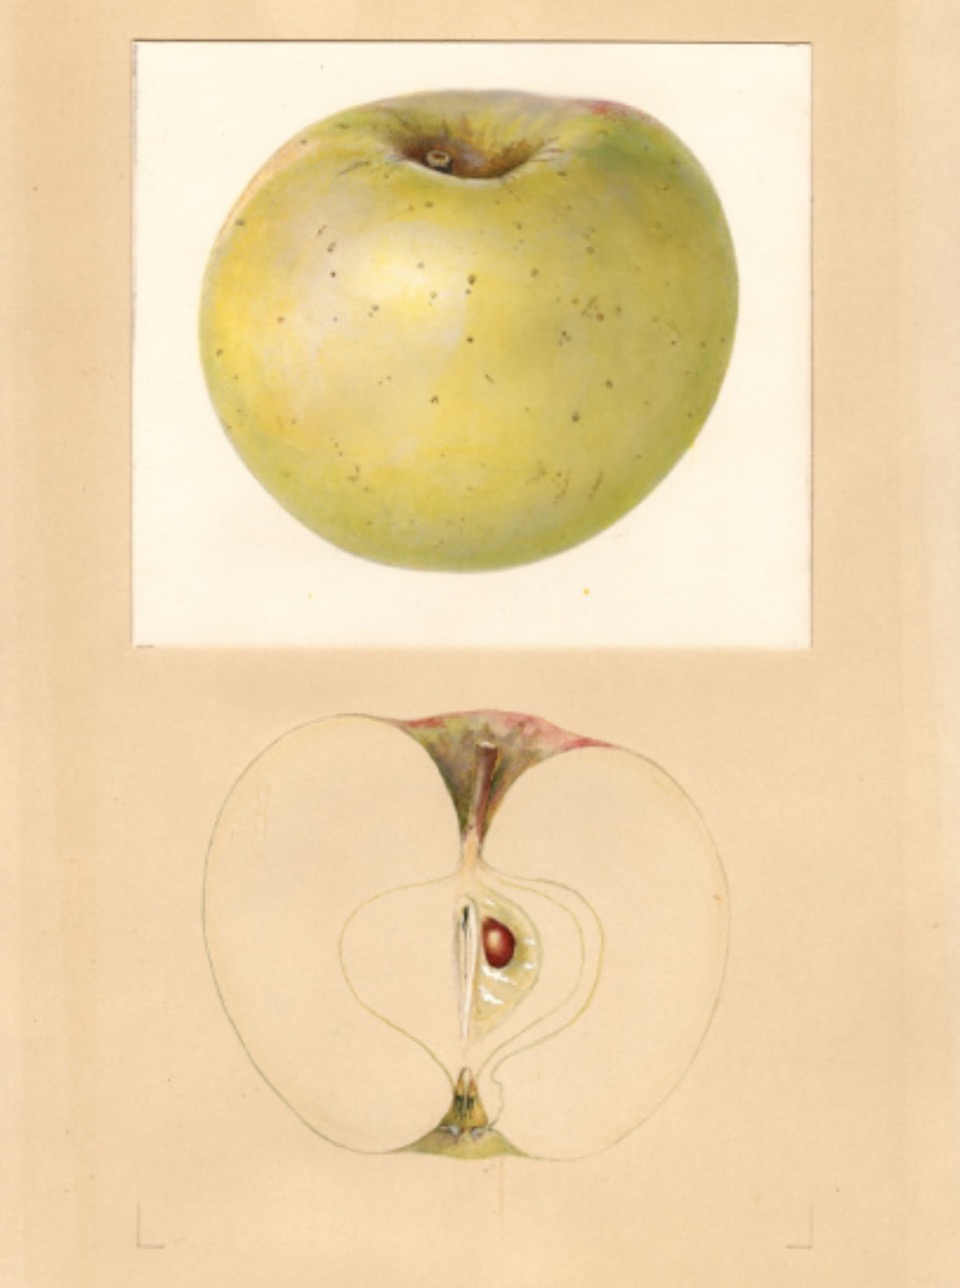 Historische Abbildung eines gelblich-grünnen und eines aufgeschnittenen Apfels; USDA